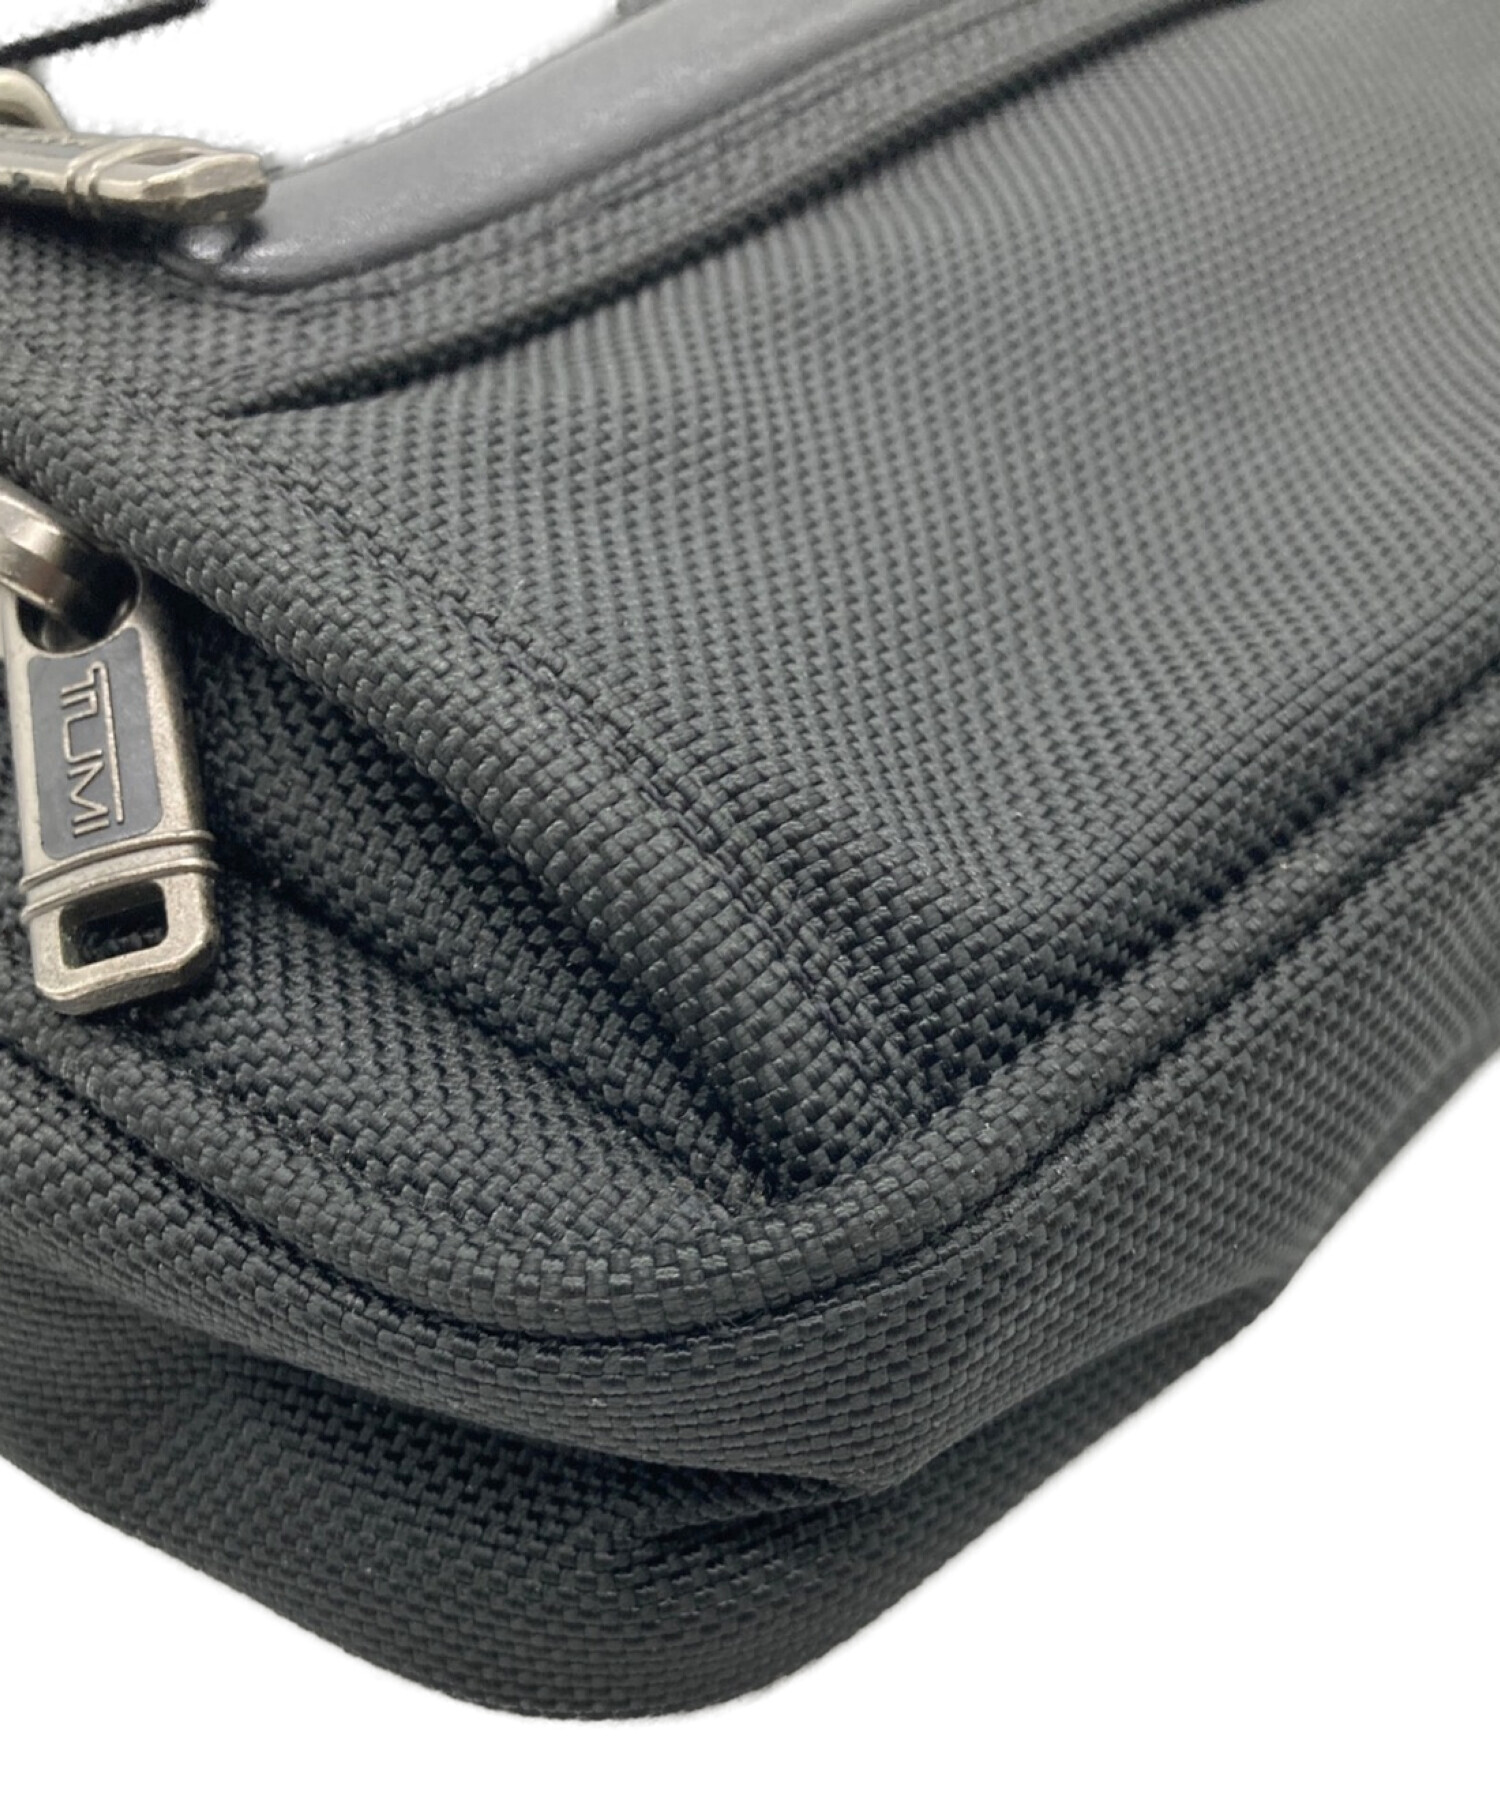 セカンドバッグ/クラッチバッグ【新品未使用保証有】TUMI クラッチバッグ 限定品 ブラック セカンドバッグ